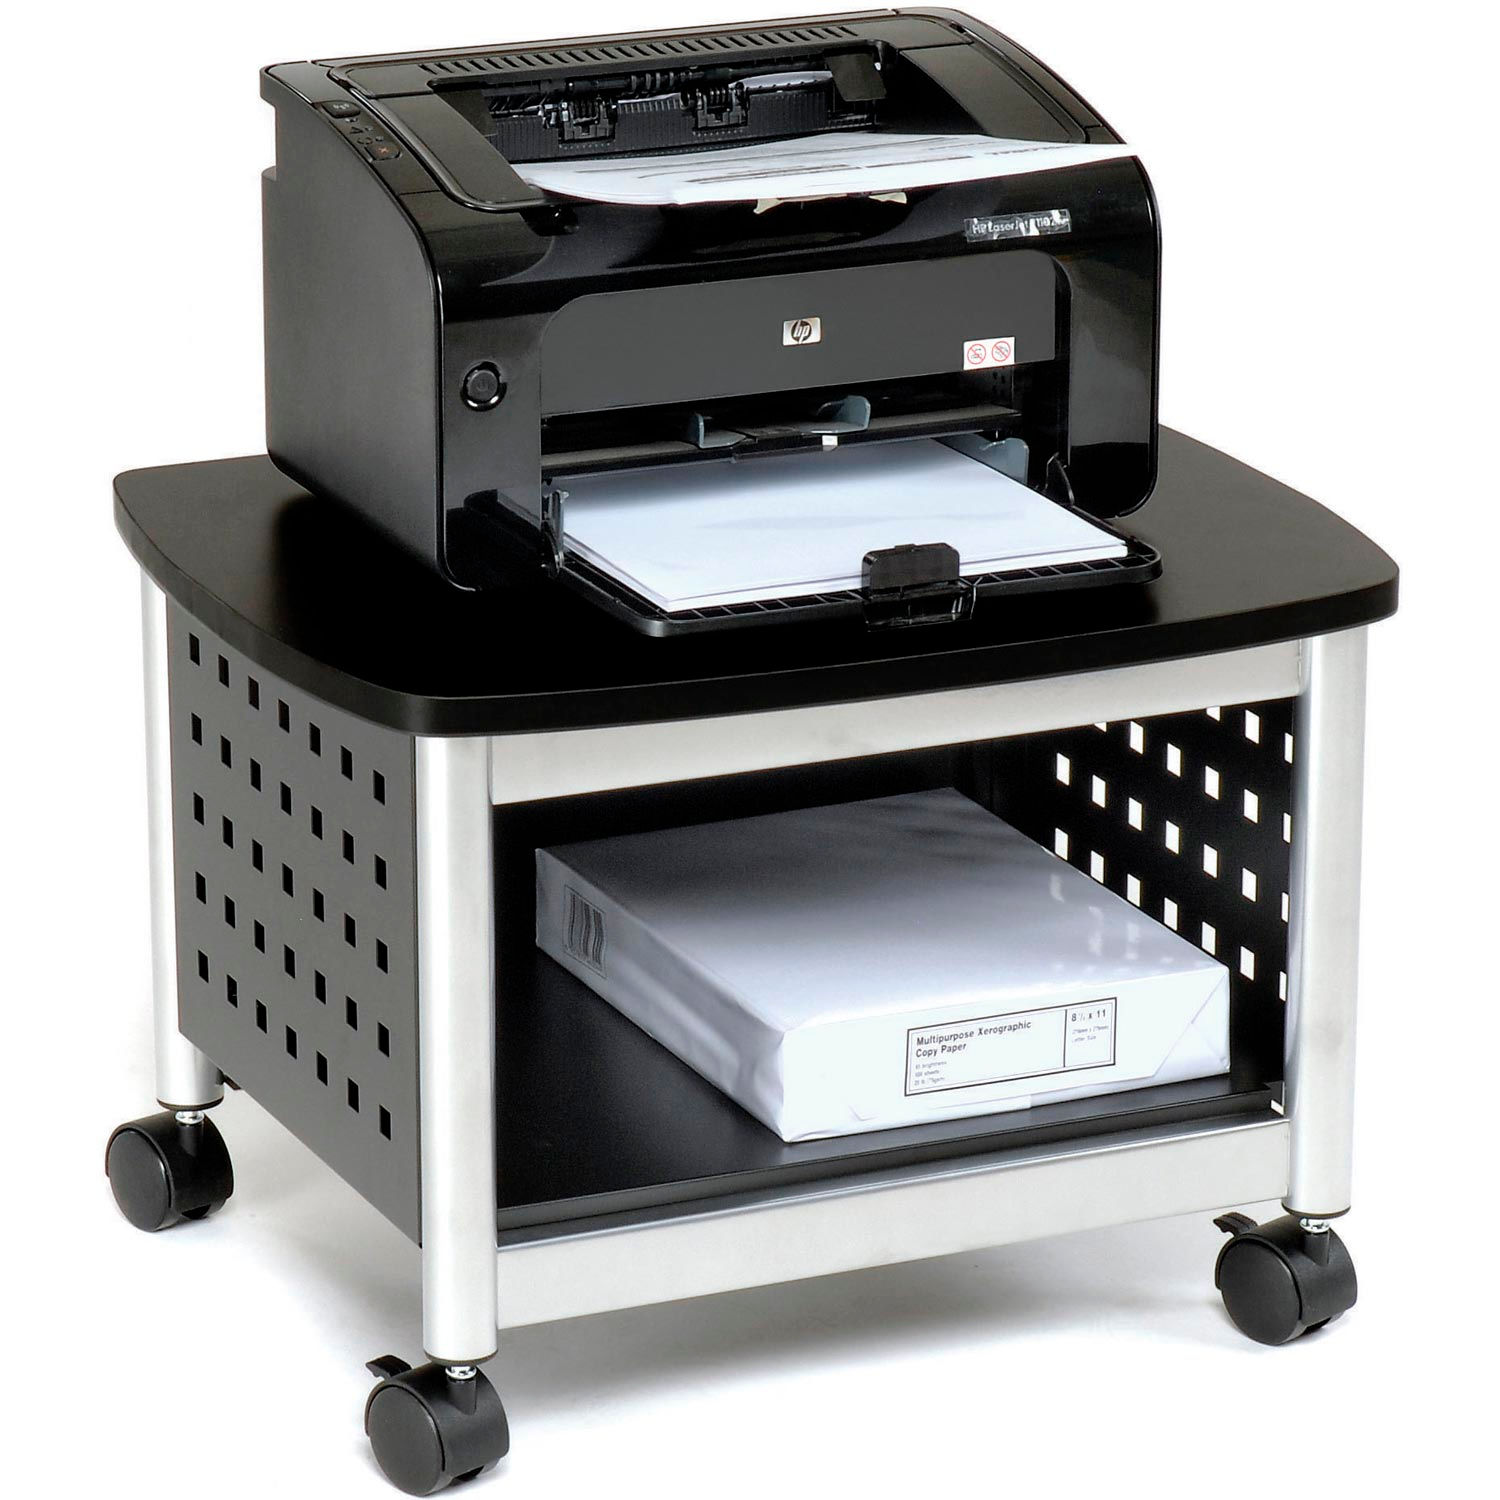 Тумба под принтер/сканер DL-hg004/White. BRAUBERG 510190 подставка под принтер. Столик под принтер. Подставка под принтер на колесиках.